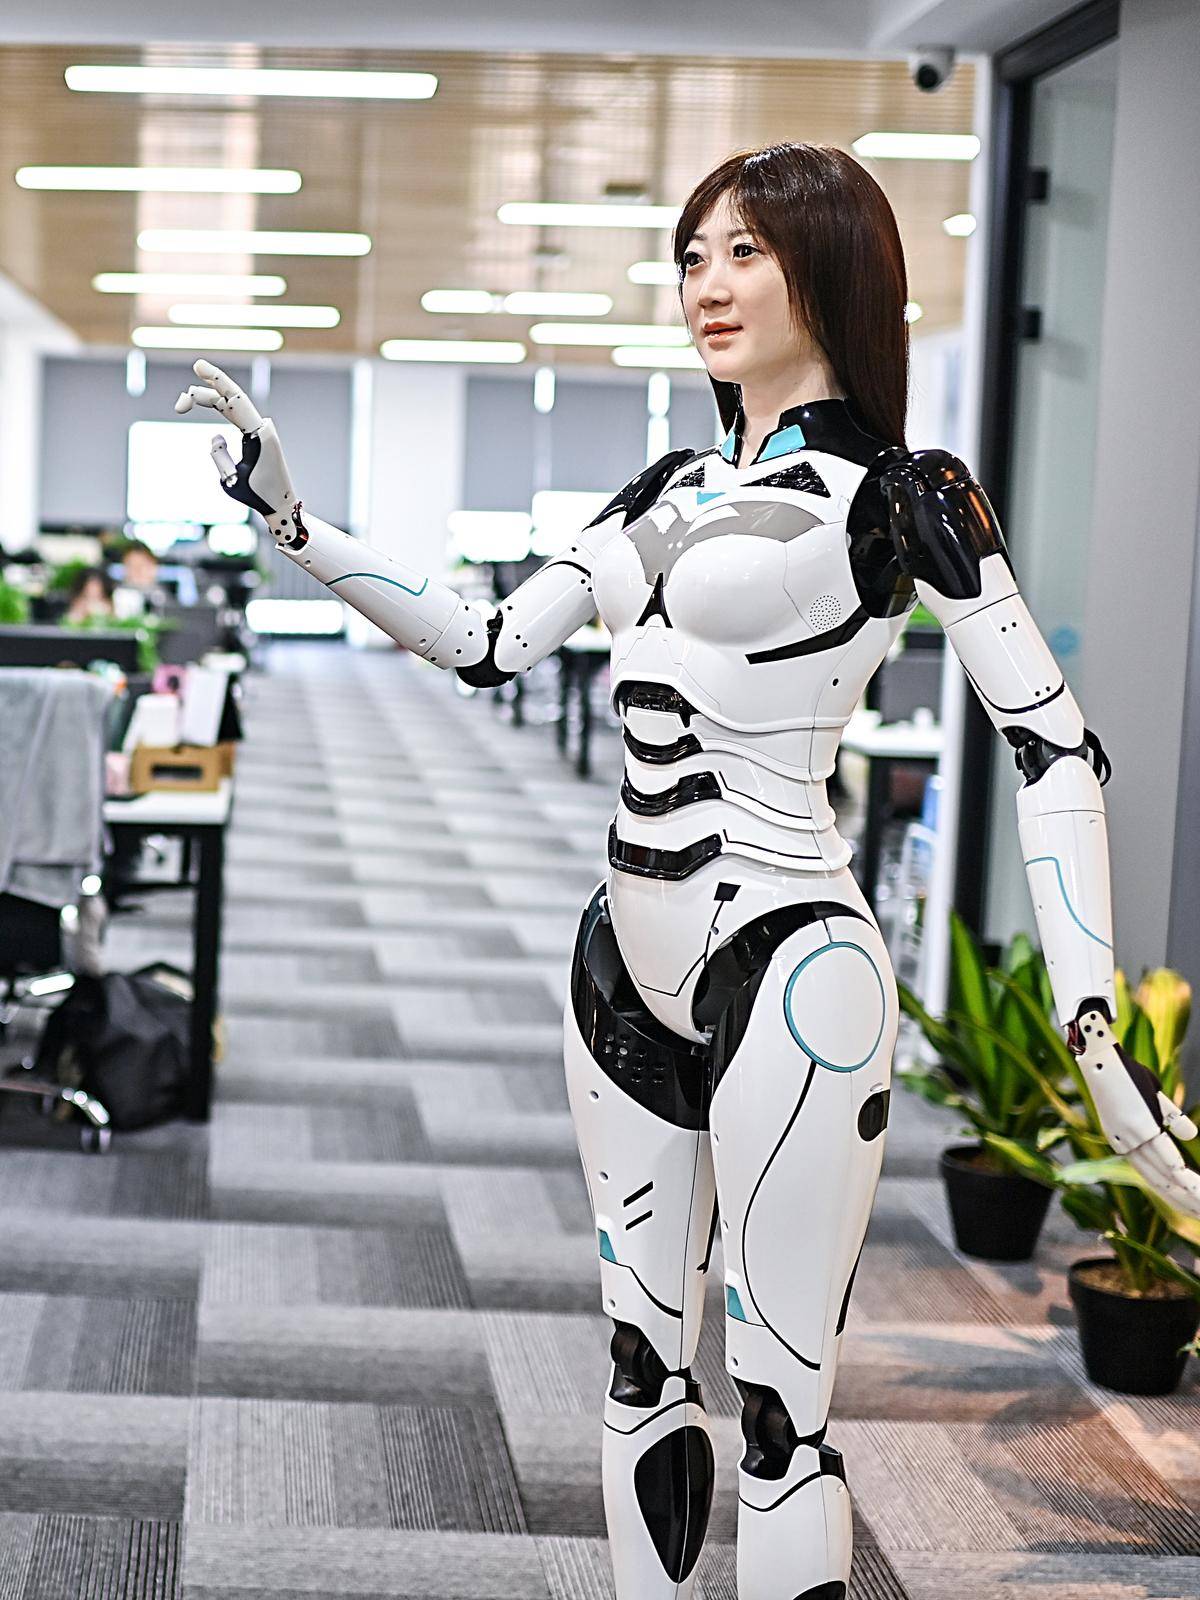 仿人形機器人「小麗」能跳舞和打太極，目前這款機器人已量產。（湖北日報全媒記者 朱熙勇 攝）